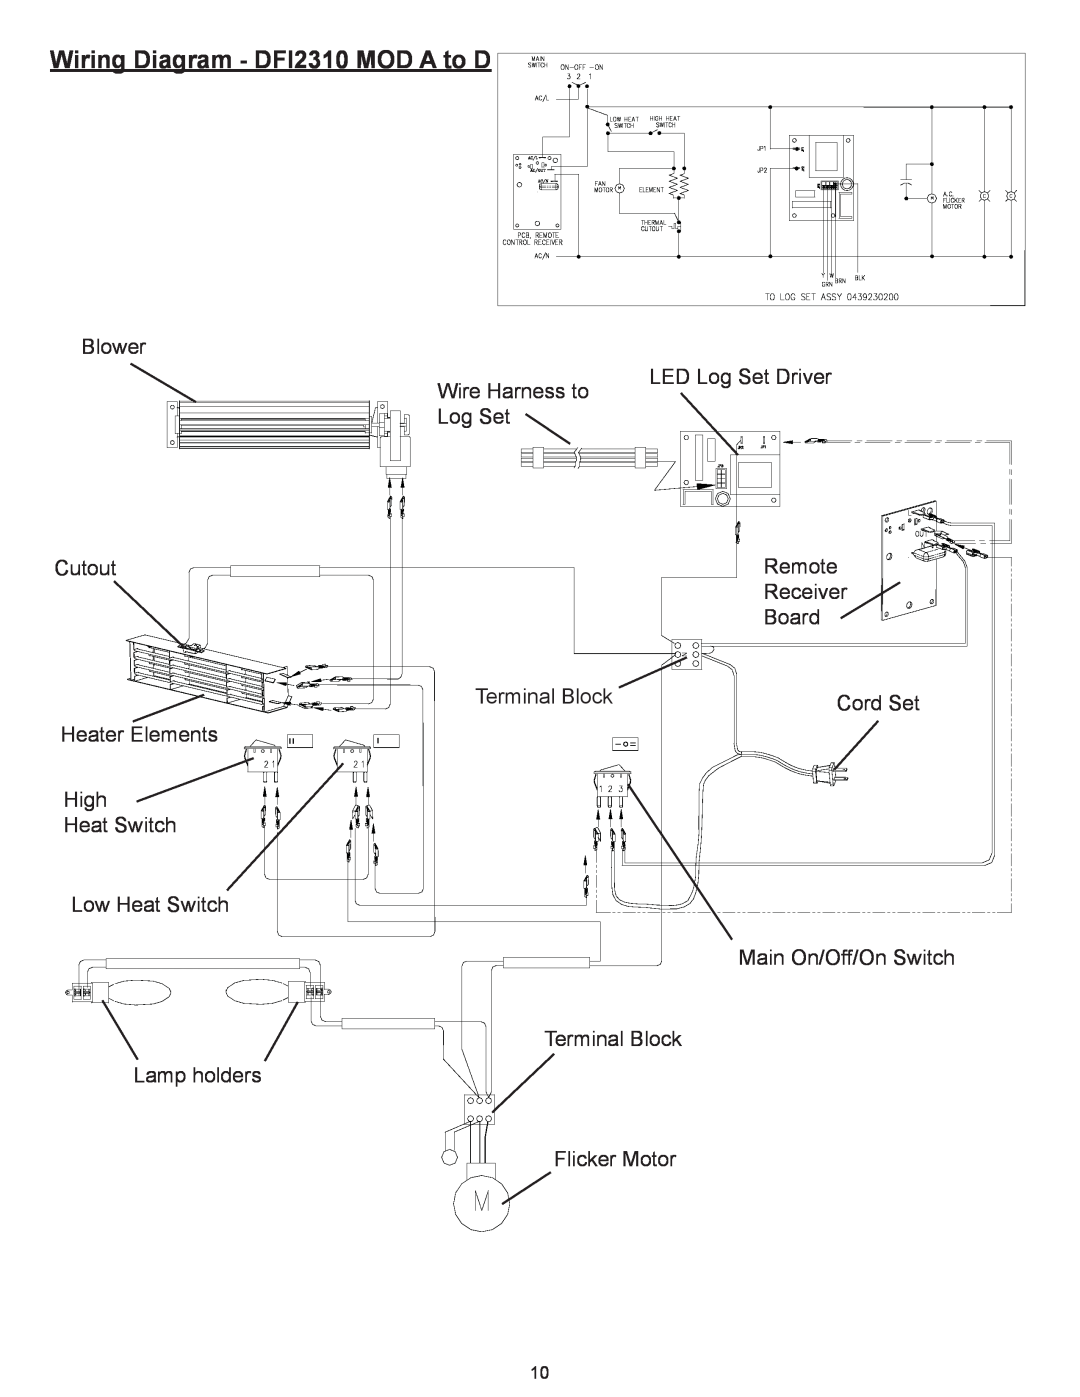 Dimplex Dimplex DFI2309 service manual Wiring Diagram - DFI2310 MOD A to D 